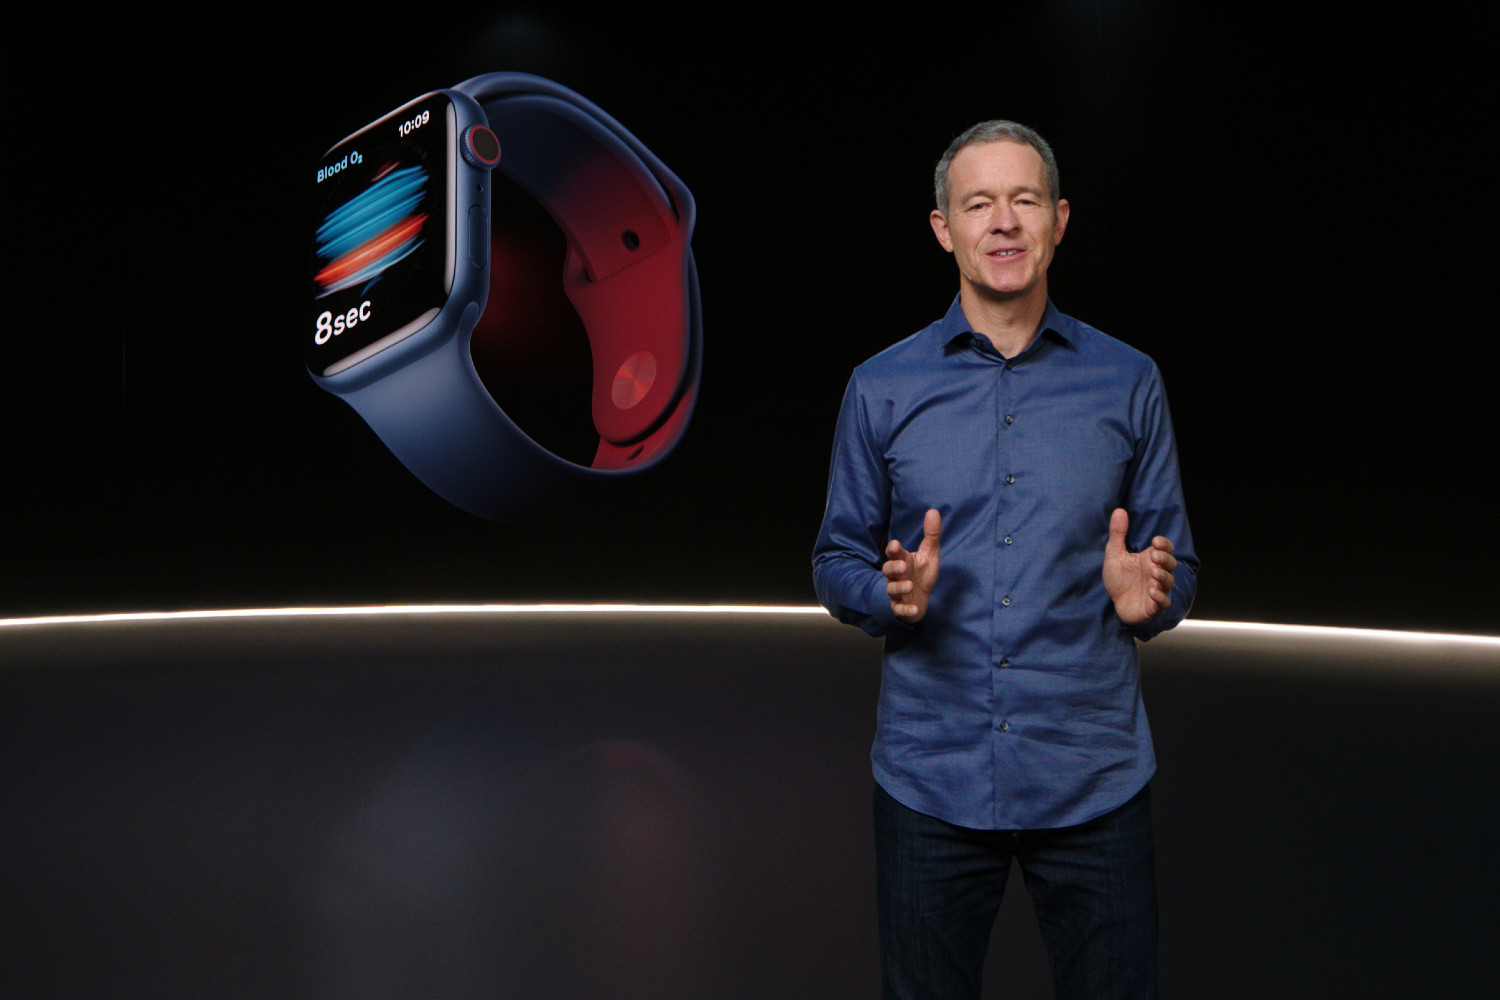 جف ویلیامز اپل در رویدادی در سپتامبر 2020 از اپل واچ جدید رونمایی کرد.